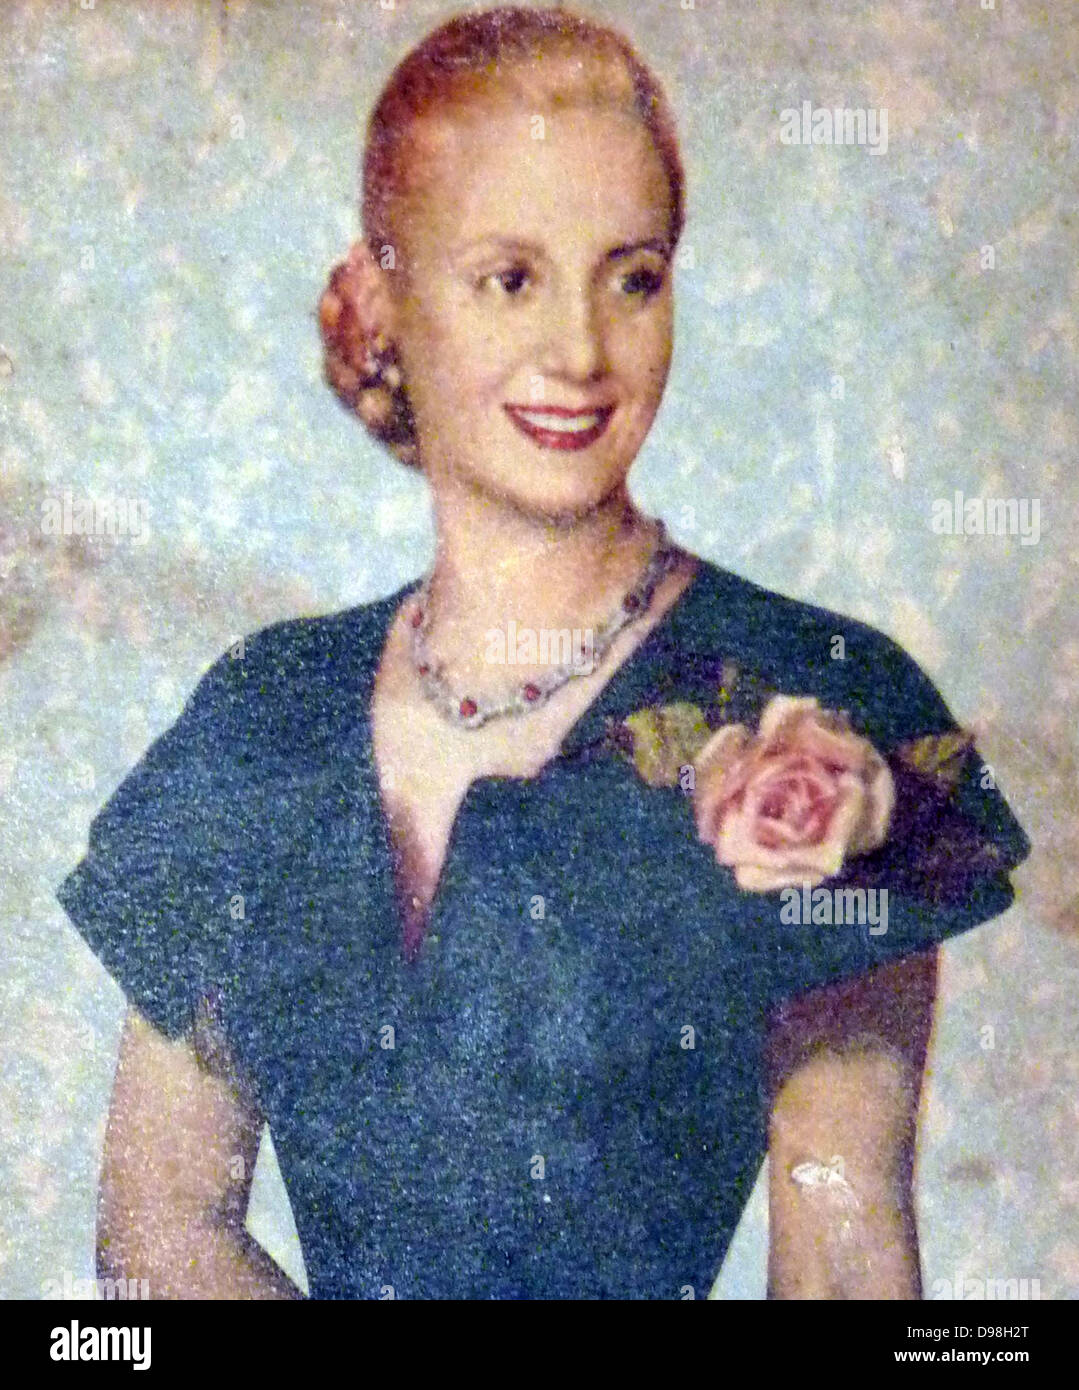 María Eva Duarte de Perón 7 Maggio 1919 - 26 luglio 1952) fu la seconda moglie del presidente Juan Perón (1895-1974) e servita come la prima donna di Argentina dal 1946 fino alla sua morte nel 1952. Essa è spesso indicato semplicemente come Eva Perón, o dalla affettuosa di lingua spagnola diminutivo Evita. Foto Stock